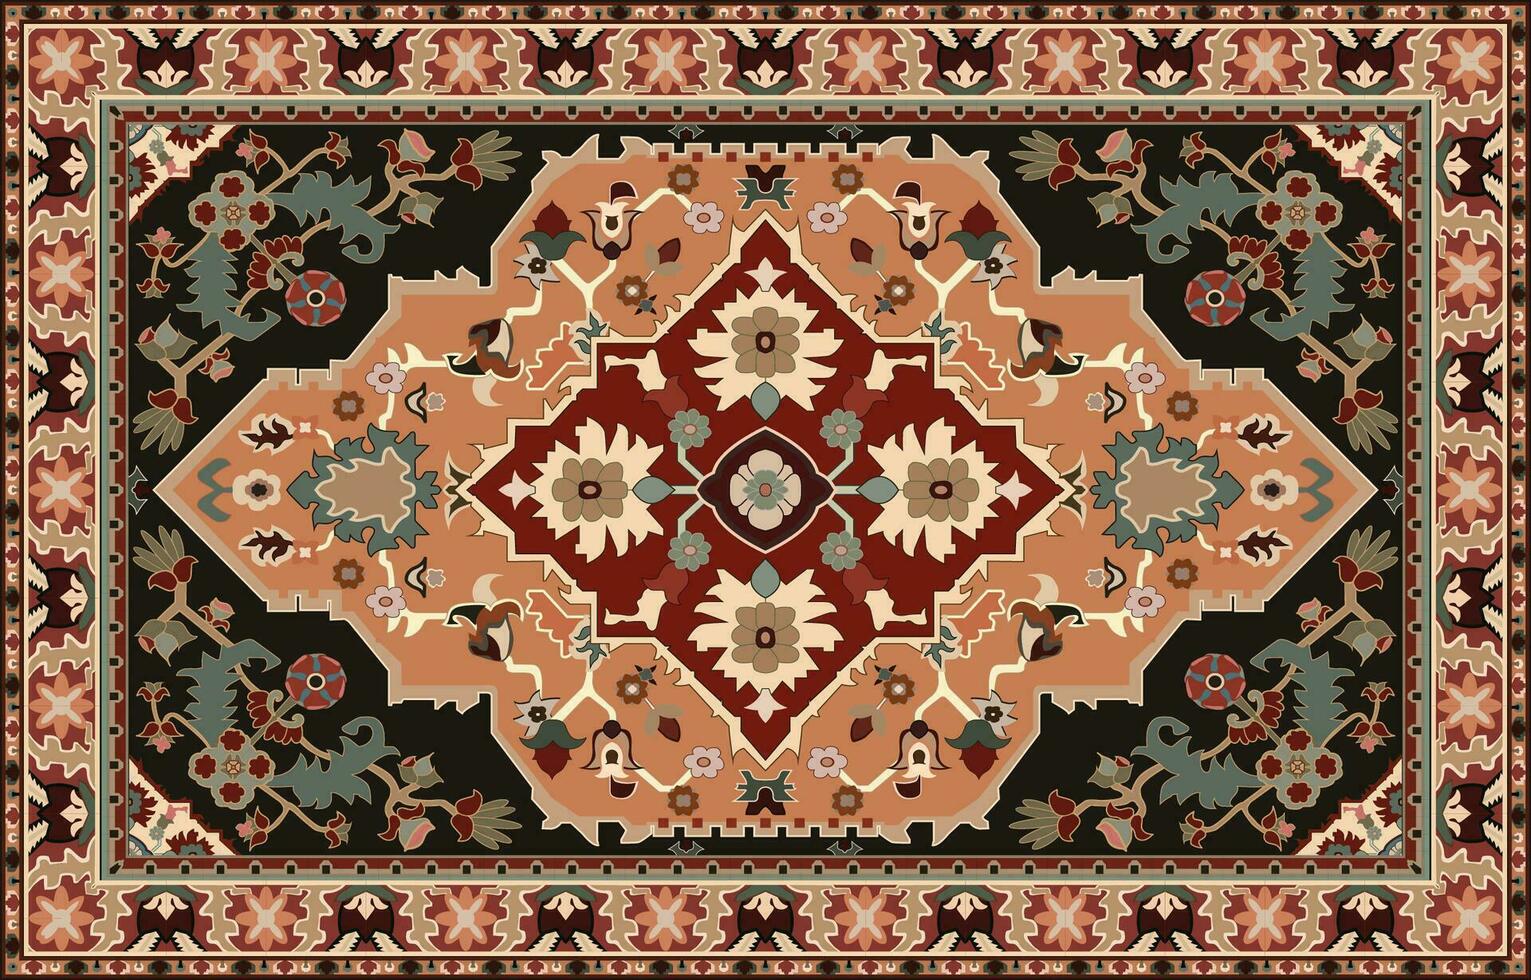 färgrik dekorativ vektor design för matta, tapis, yoga matta. geometrisk etnisk ClipArt. arab dekorativ matta med dekorativ element.persian matta